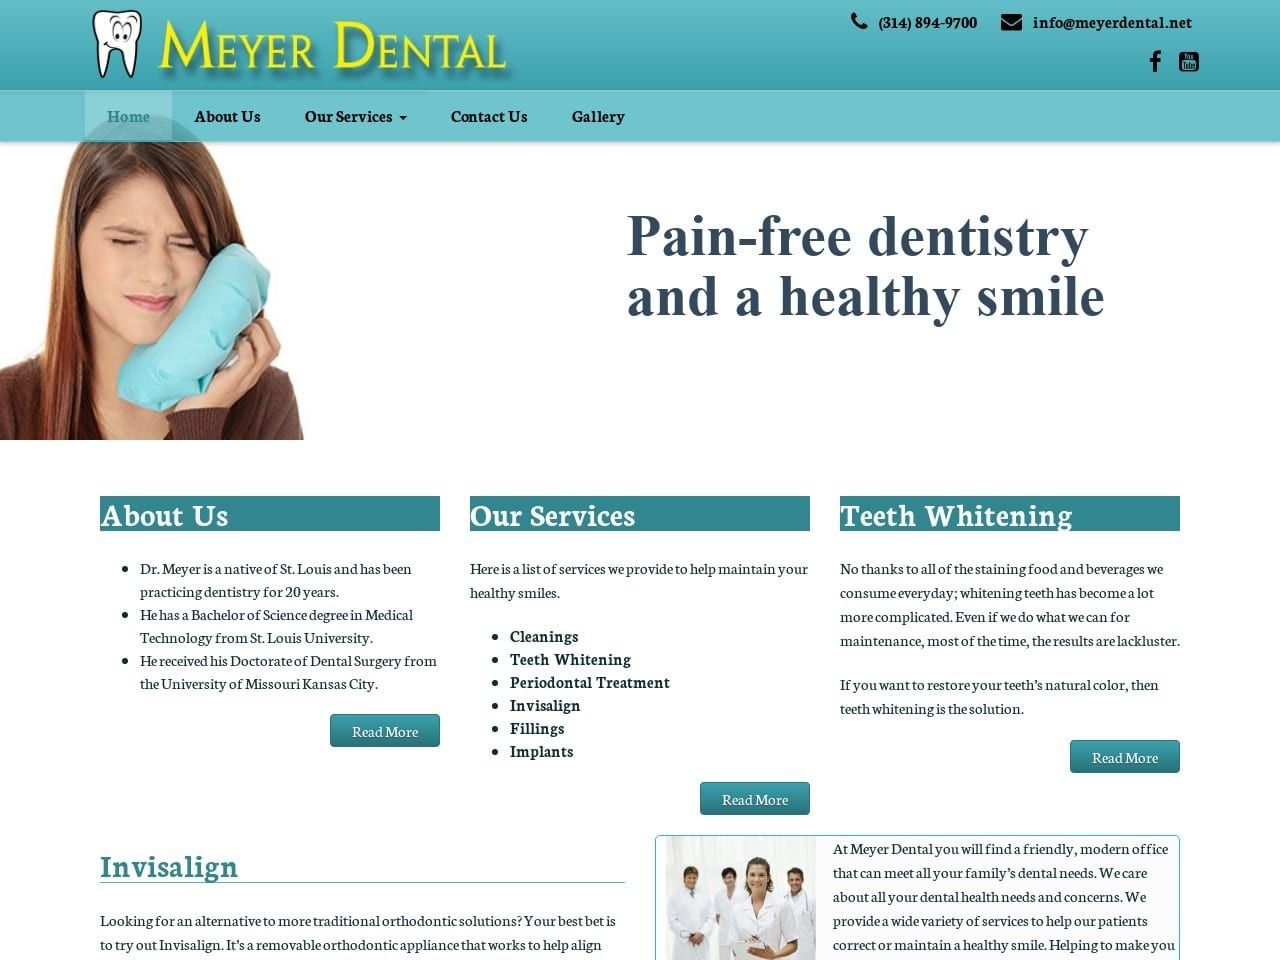 Meyer Dental Website Screenshot from meyerdental.net